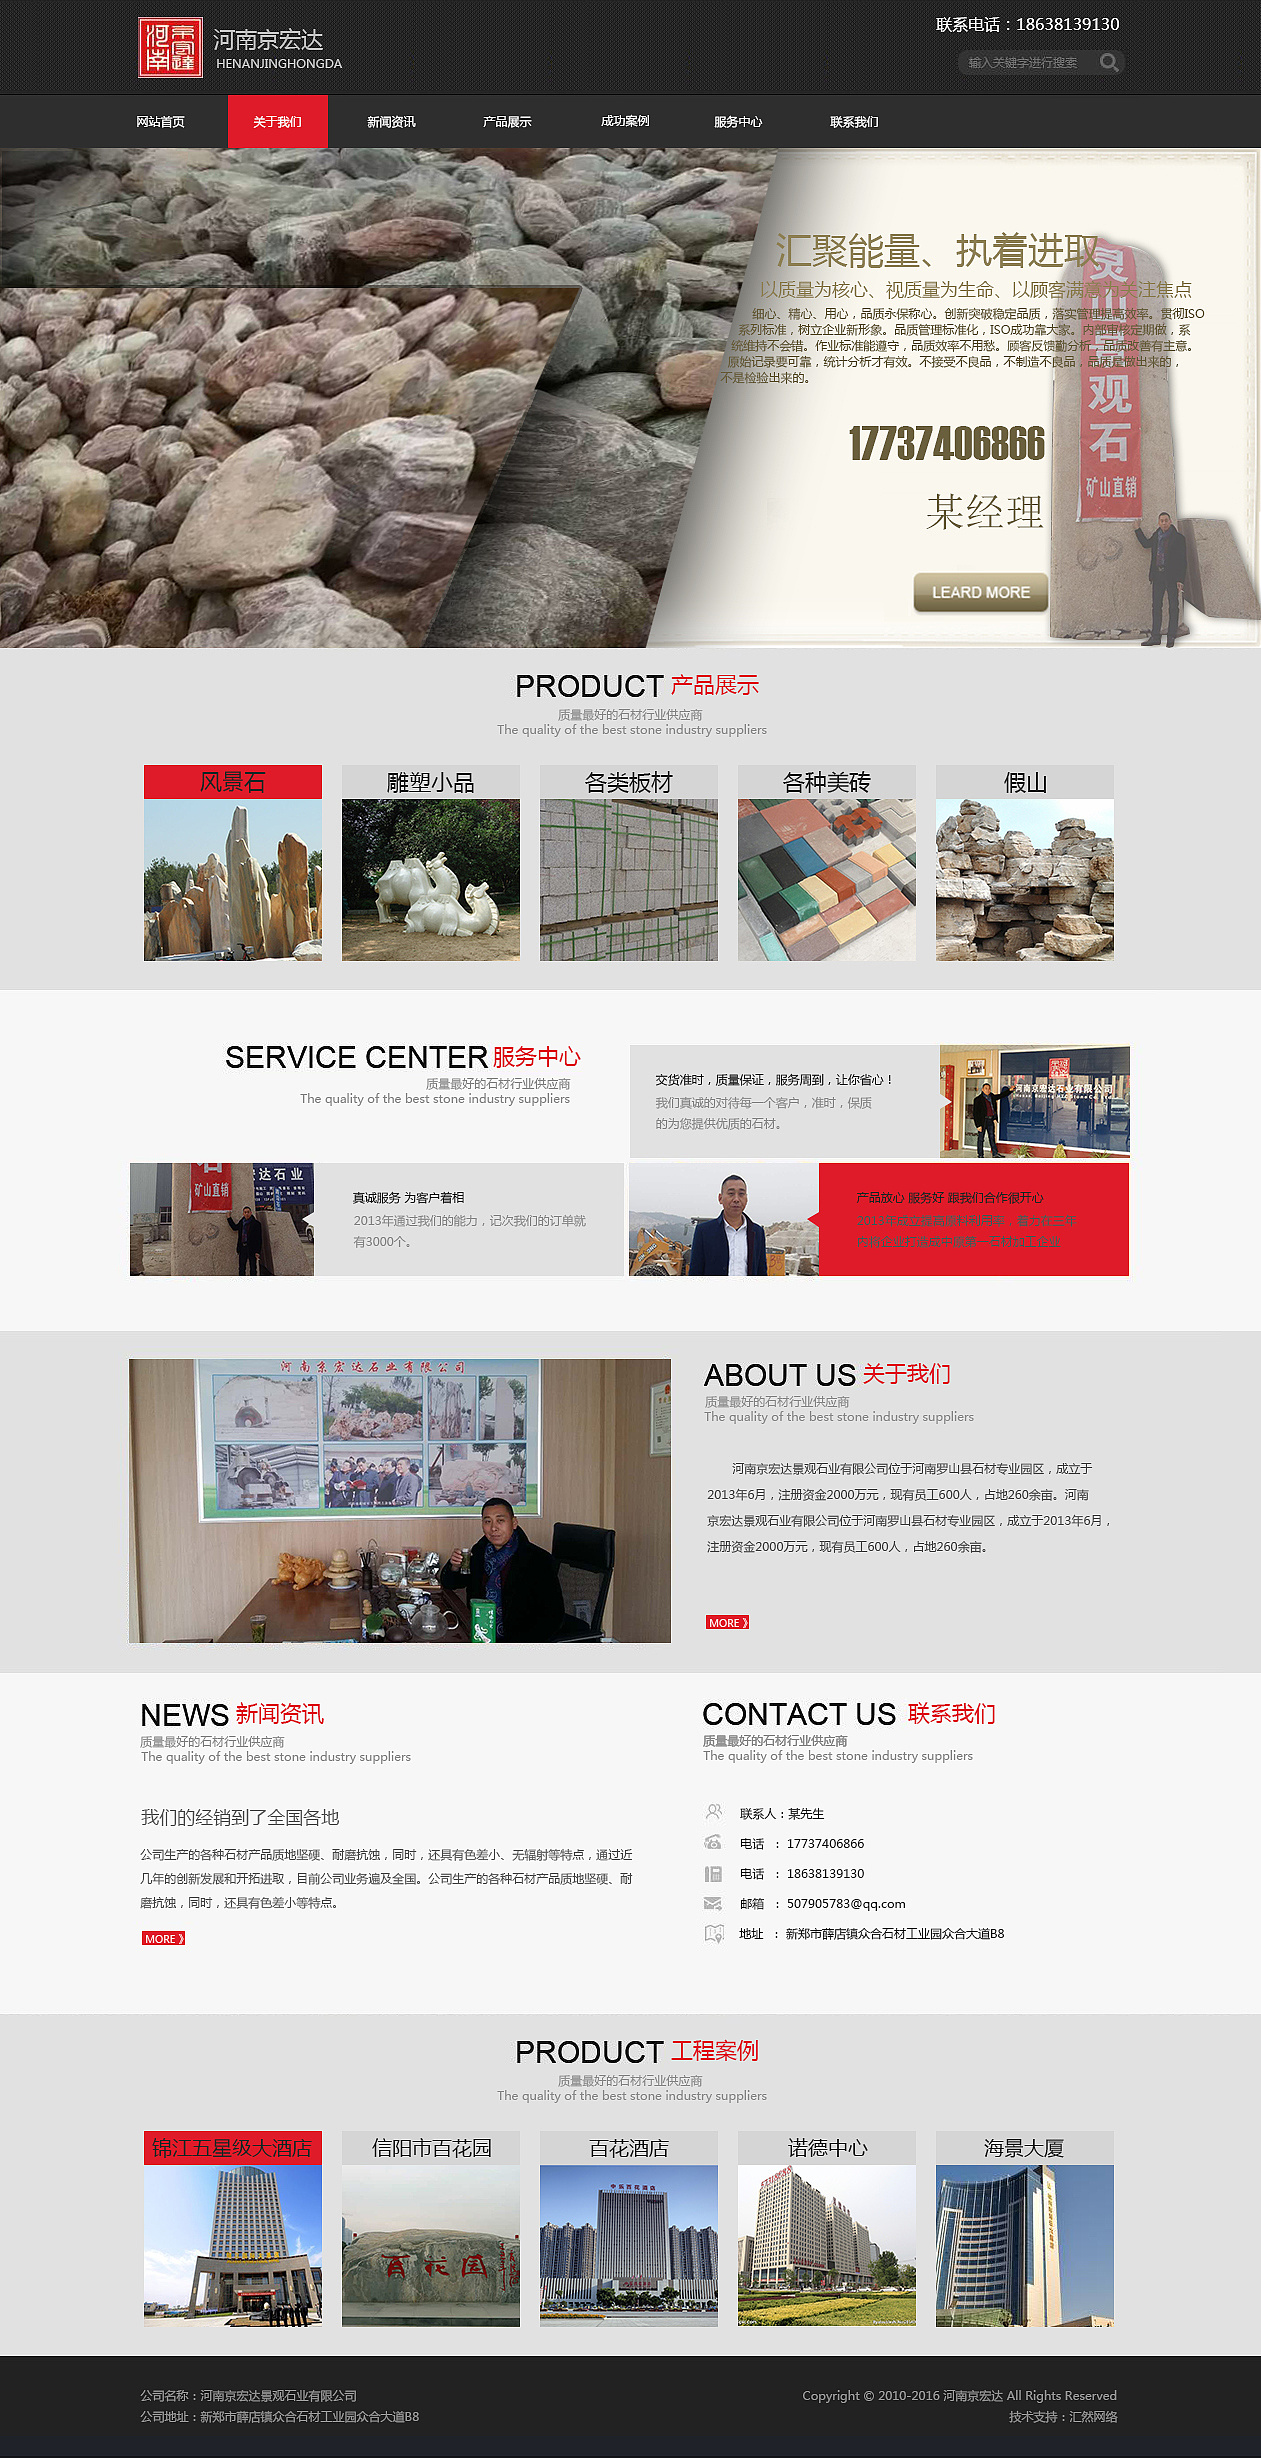 京宏达石业 汇然品牌设计 设计师作品 网页 企业官网 汇然品牌设计 